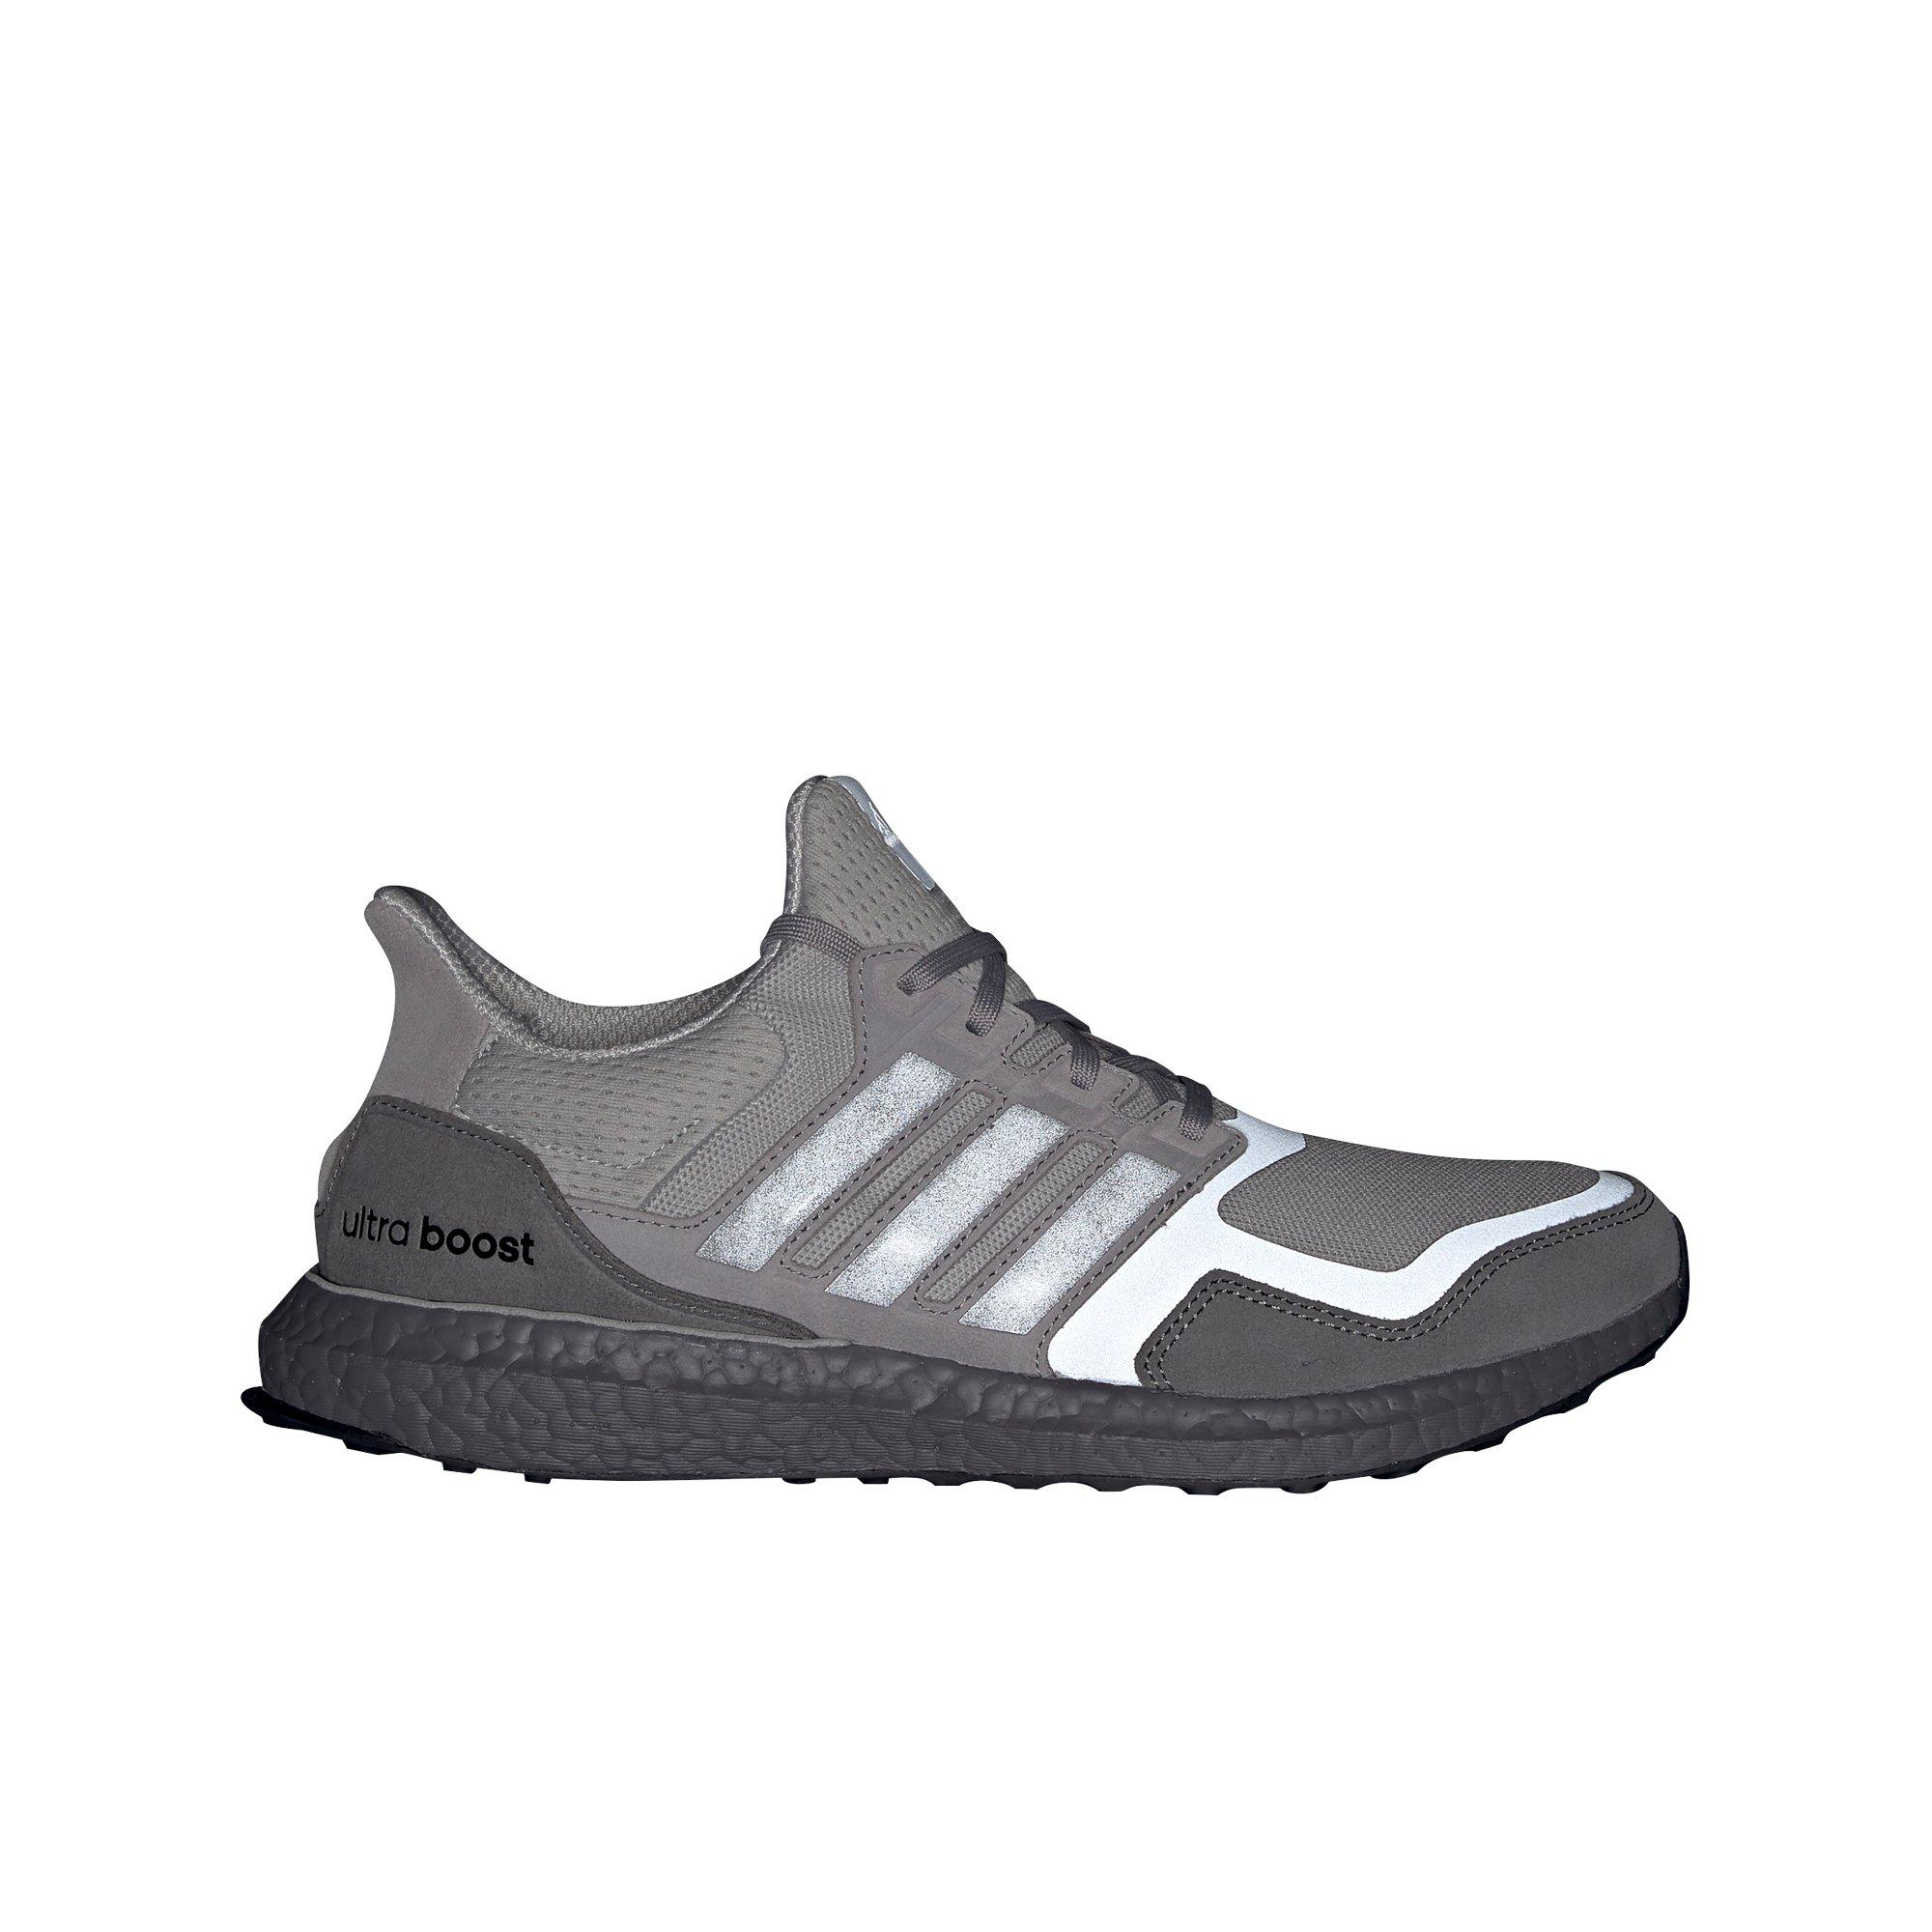 adidas grey mens shoes